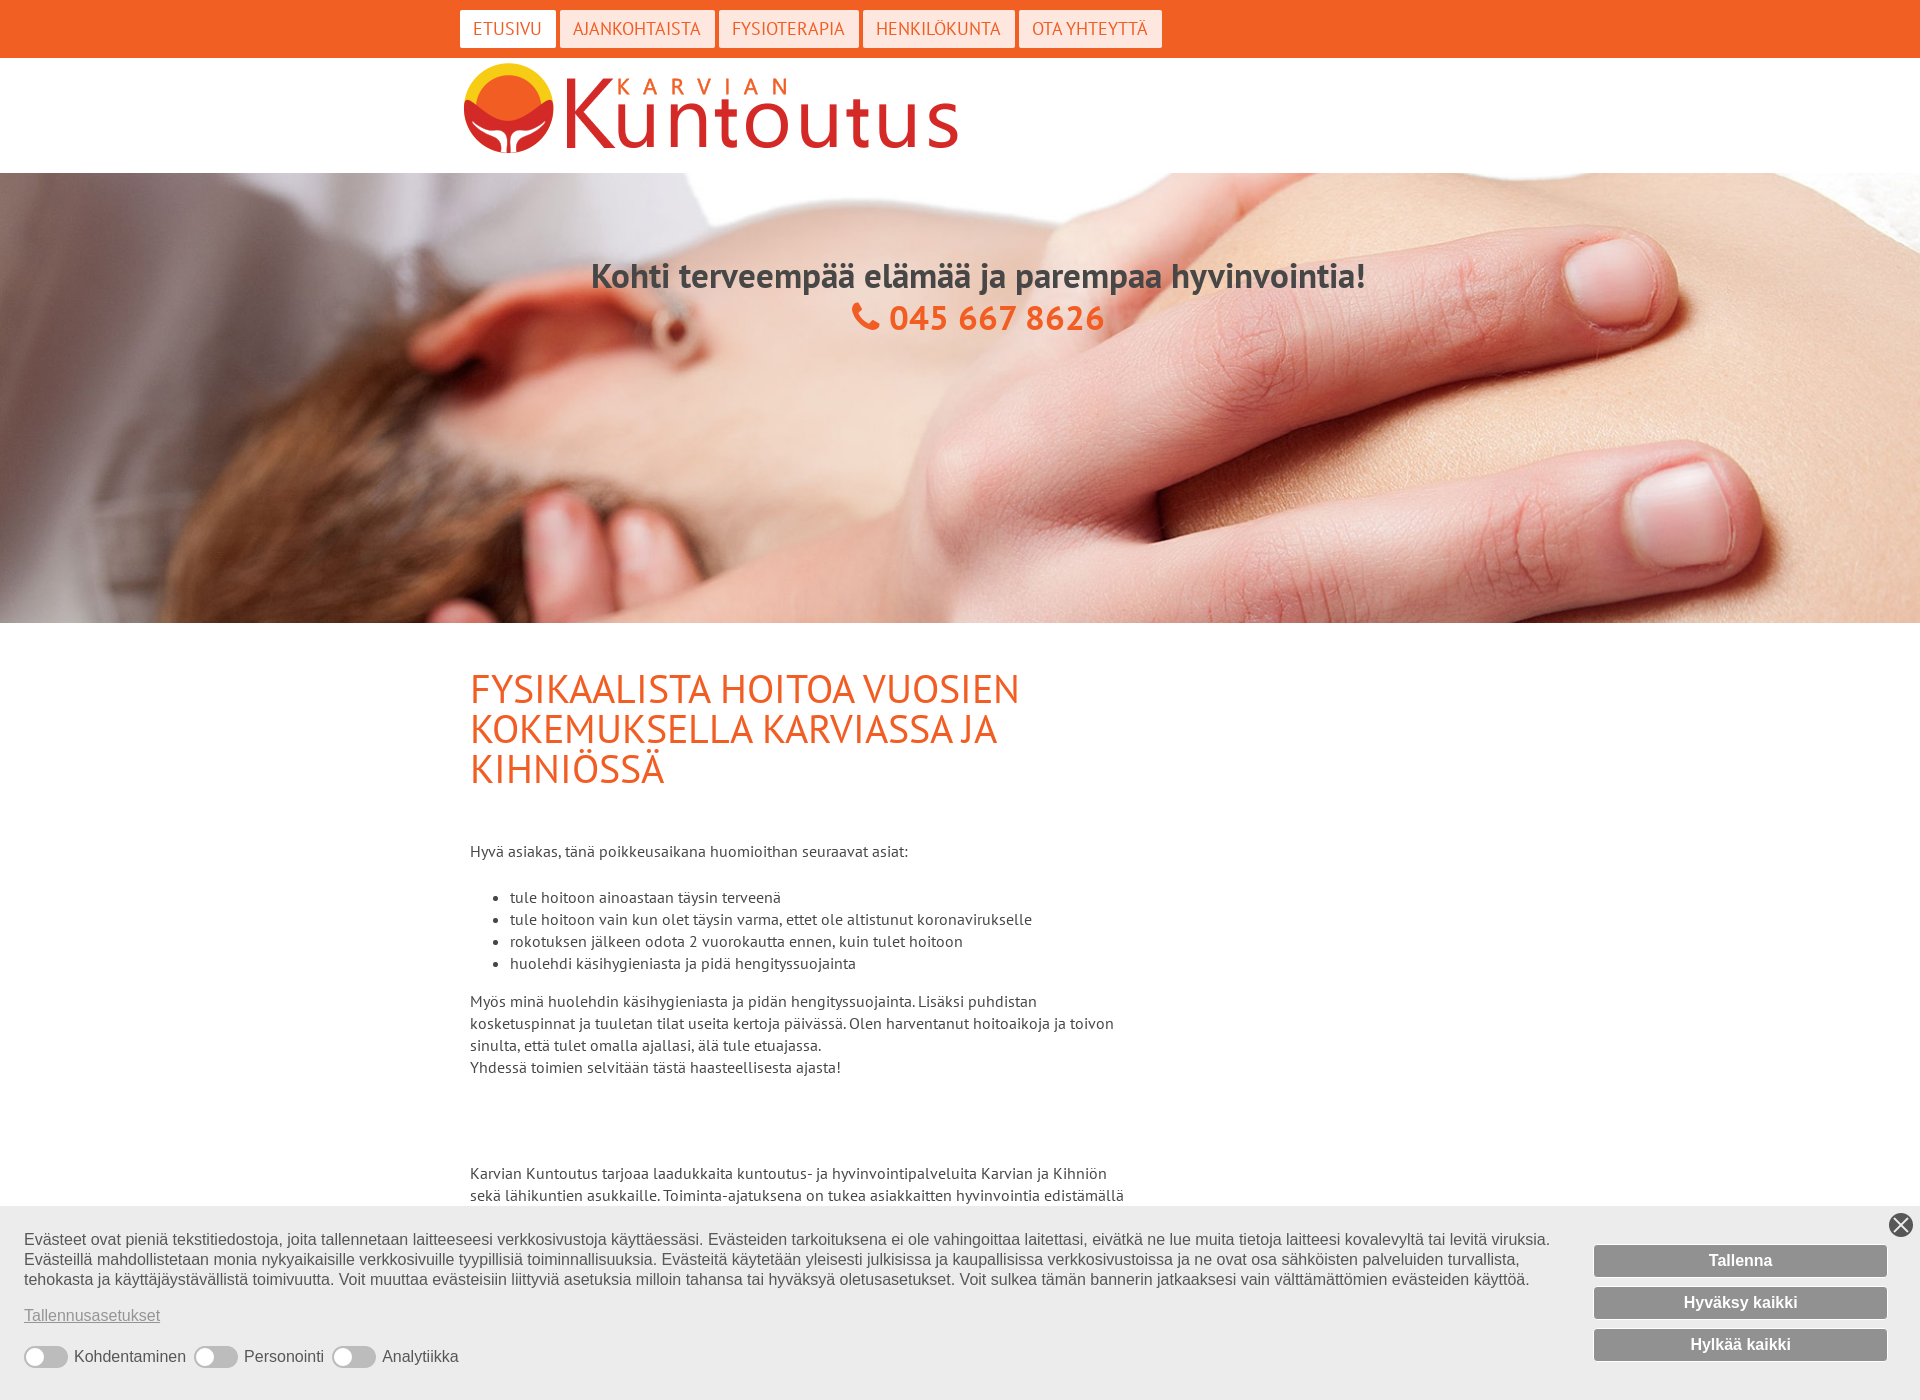 Skärmdump för karviankuntoutus.fi